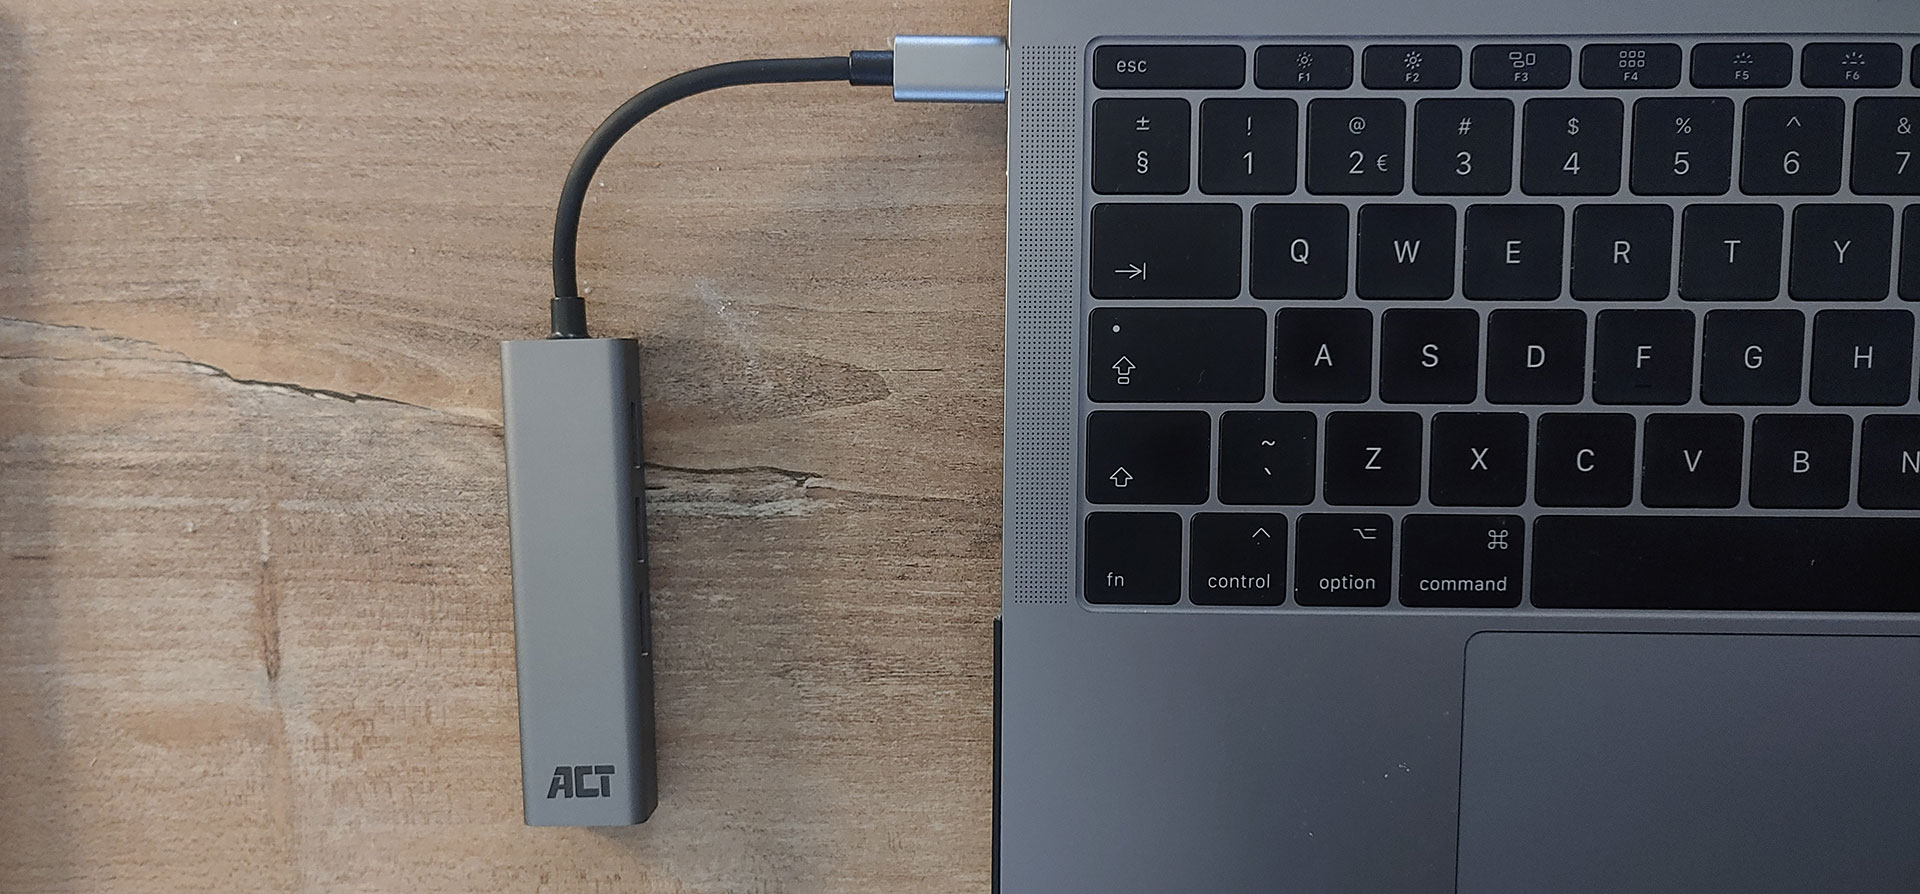 ACT USB-C Hub with Gigabit Ethernet AC7055 met de Apple MacBook Pro 13 2017